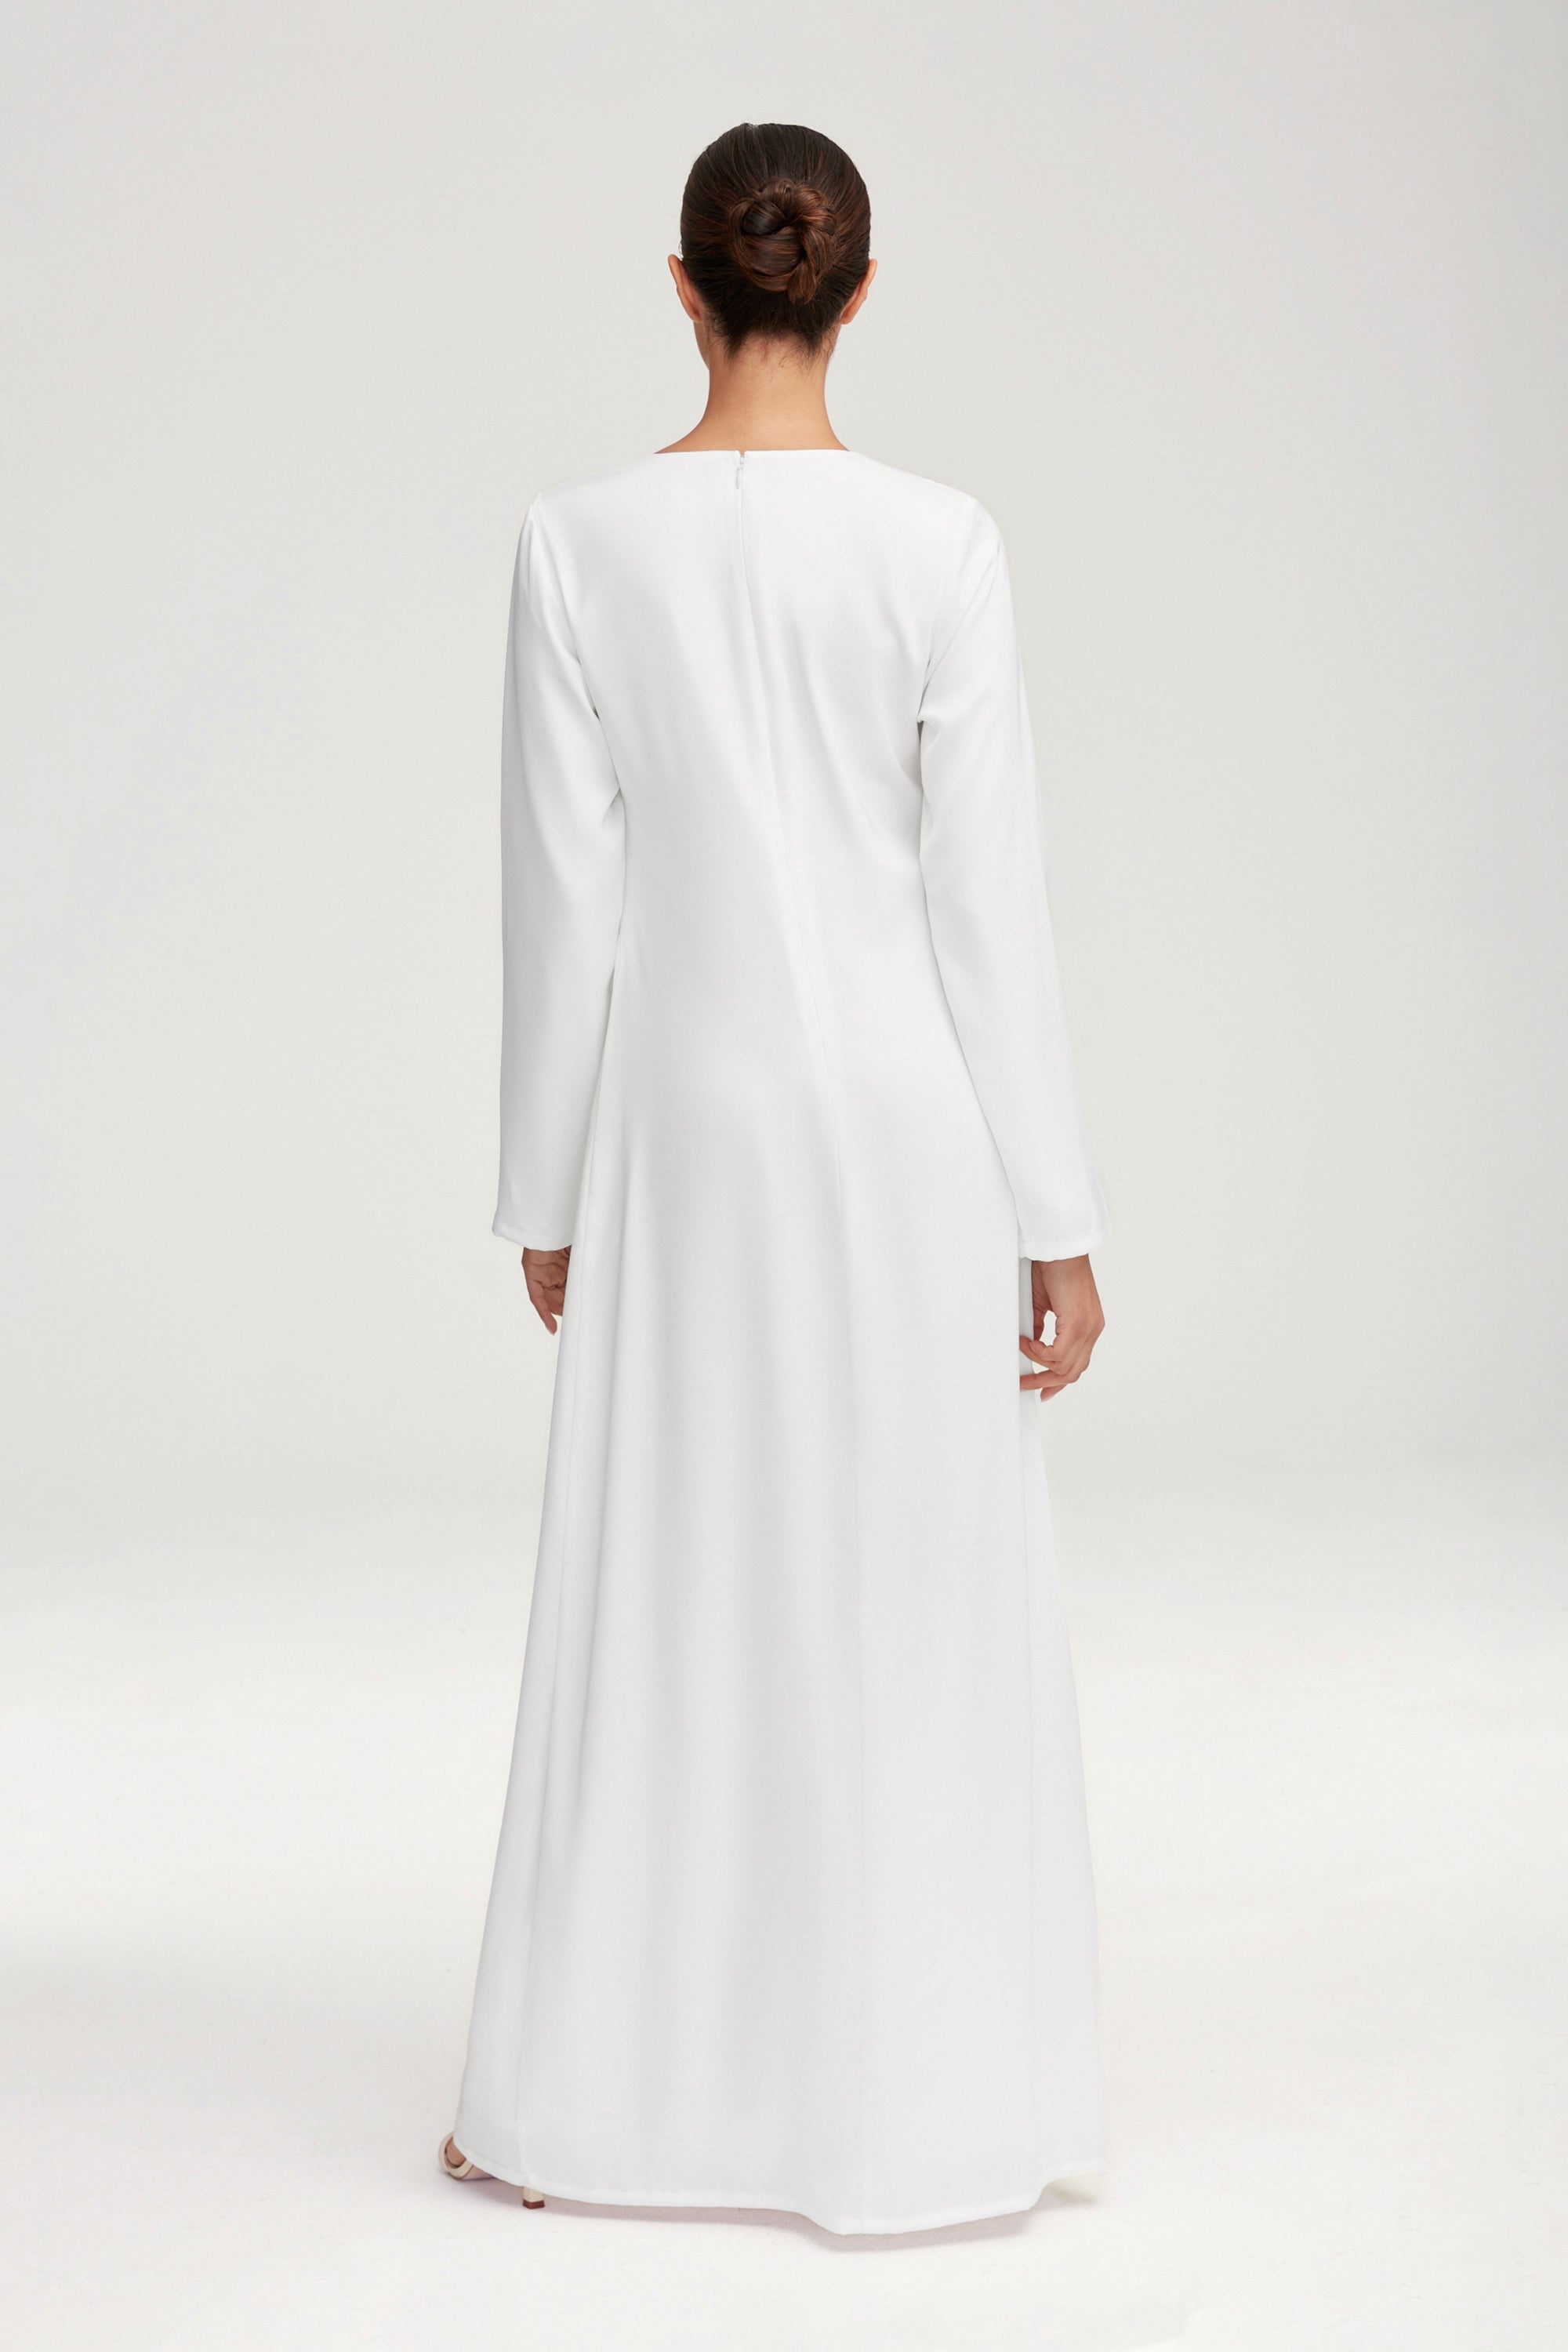 Essential Inner Slip Satin Maxi Dress - White Clothing epschoolboard 